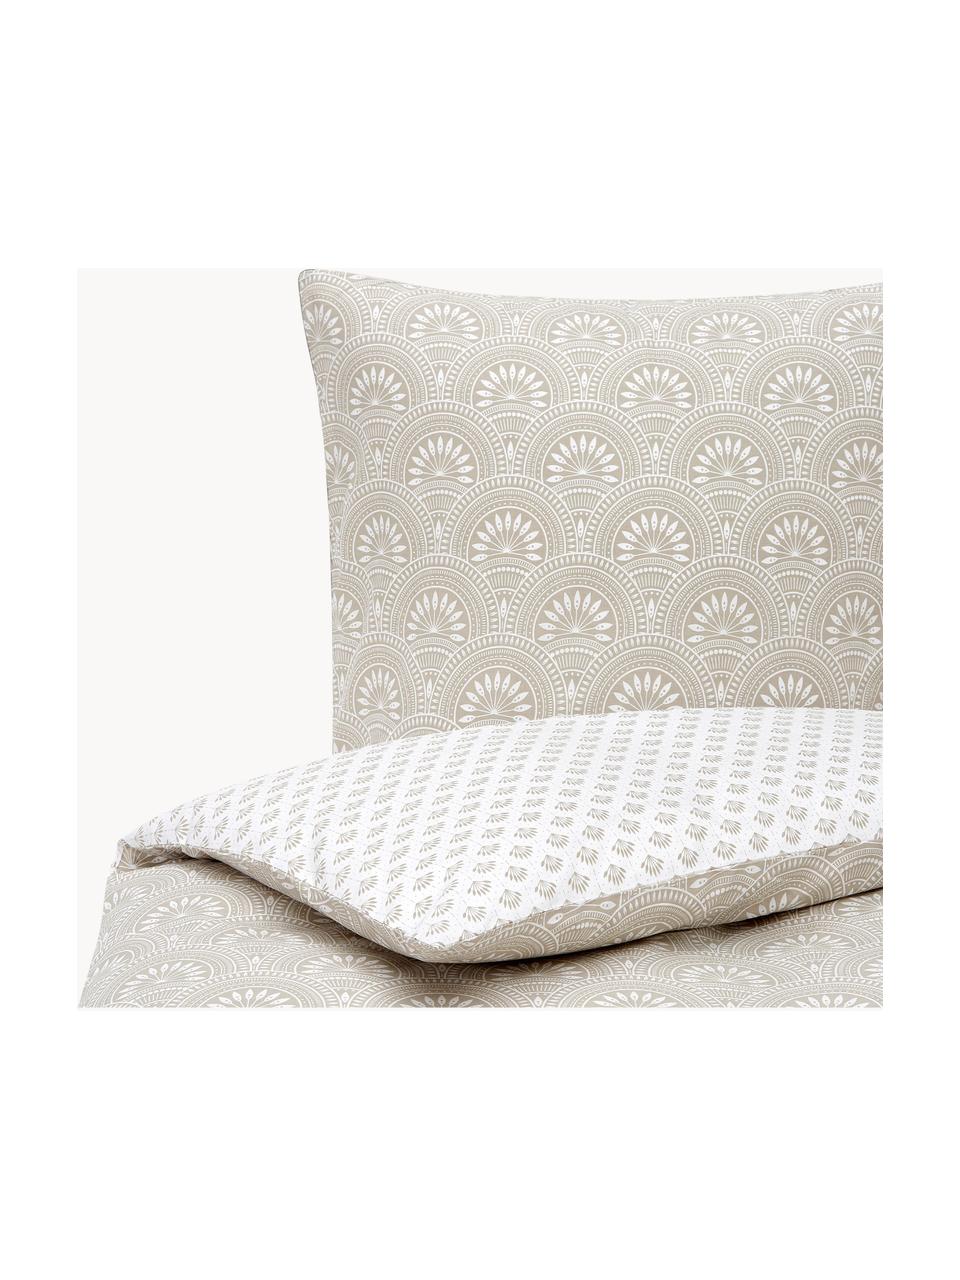 Dwustronna pościel z bawełny organicznej Tiara, Jasny beżowy, biały, 135 x 200 cm + 1 poduszka 80 x 80 cm